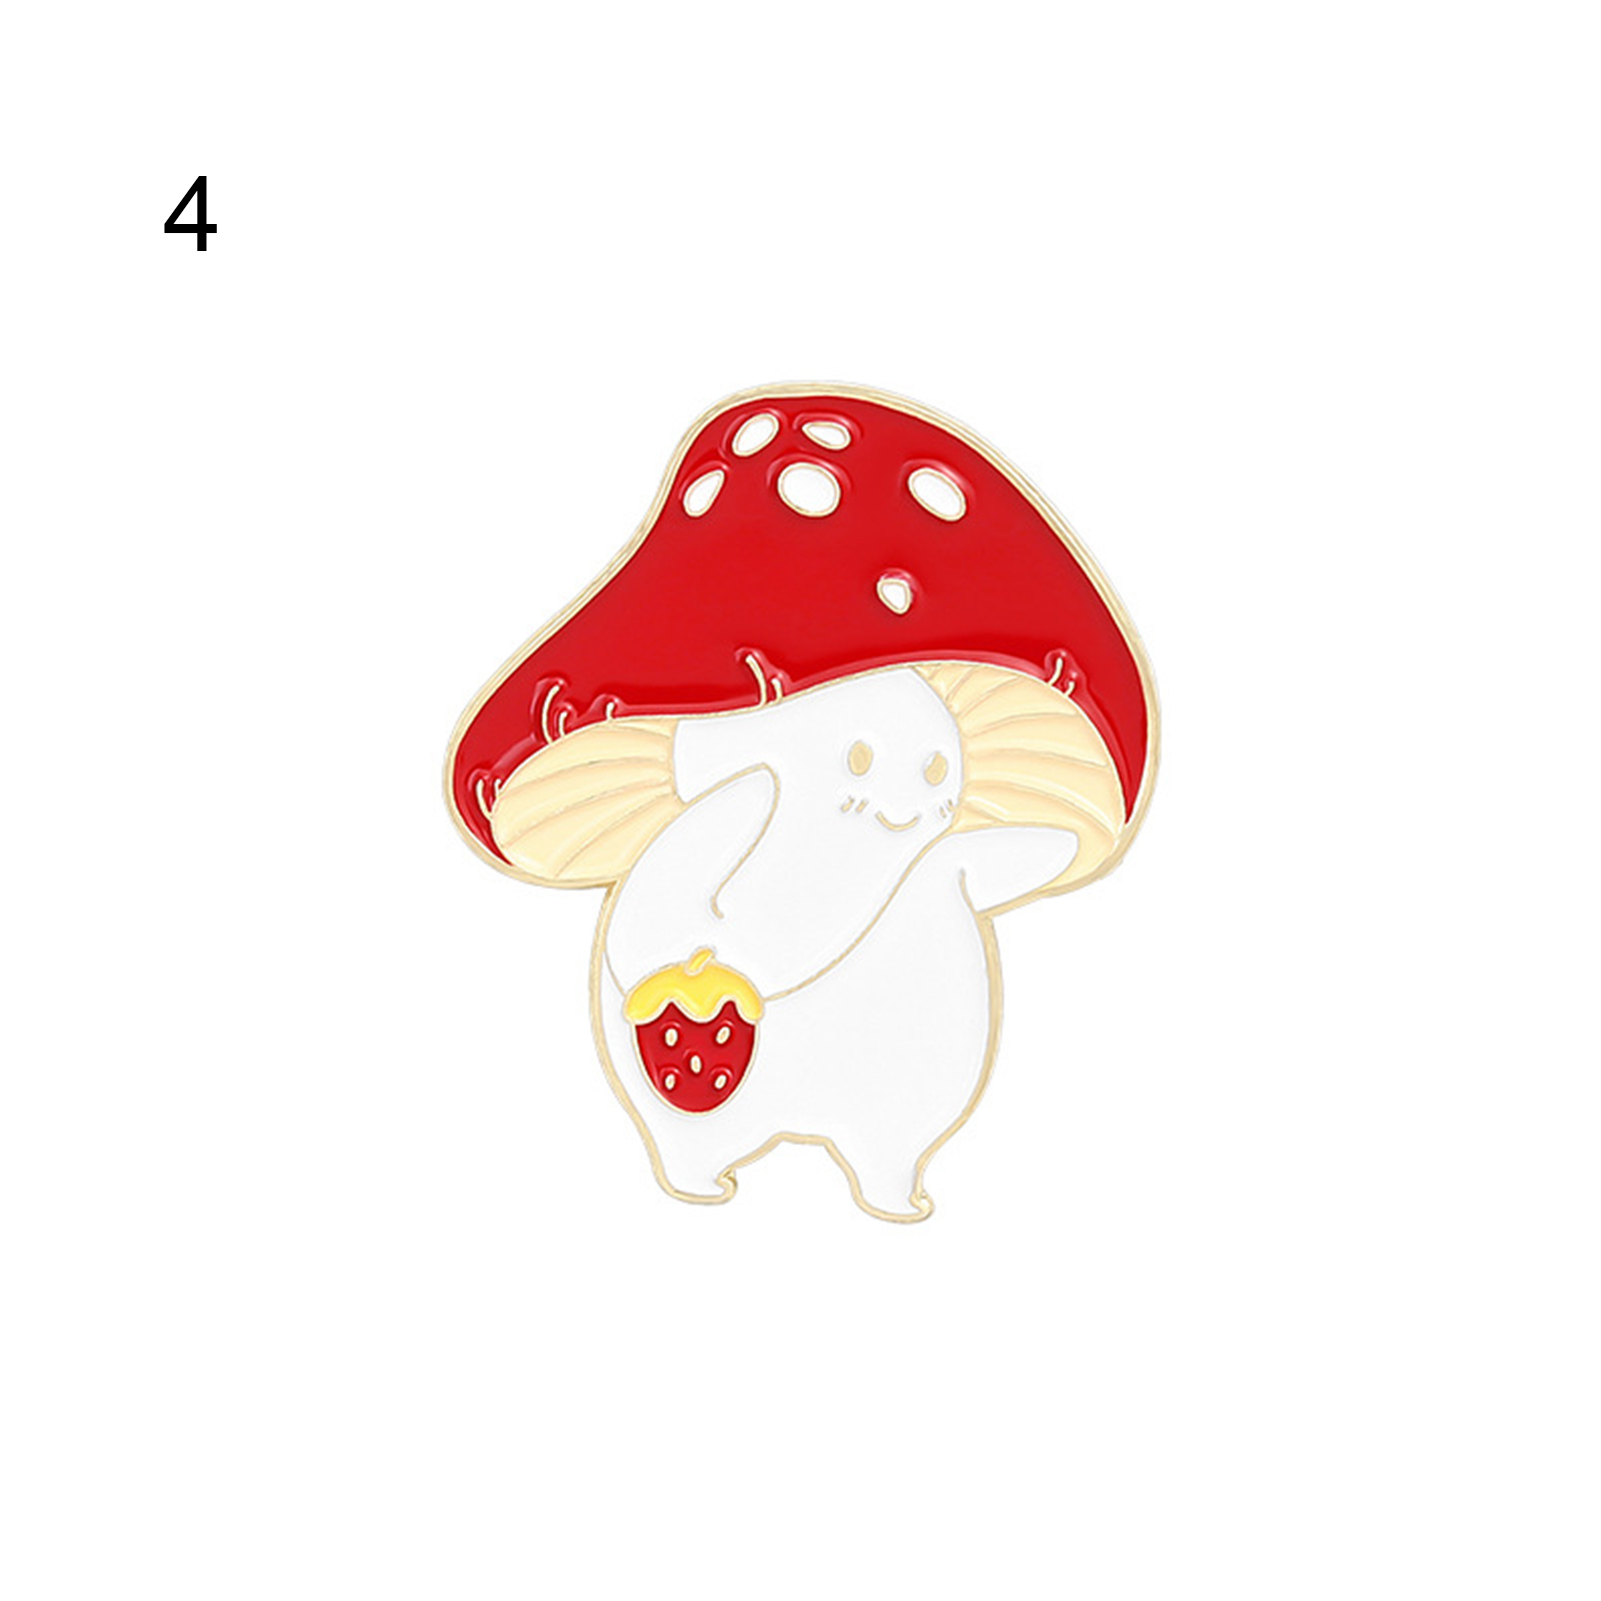 Adorable  mushroom brooch